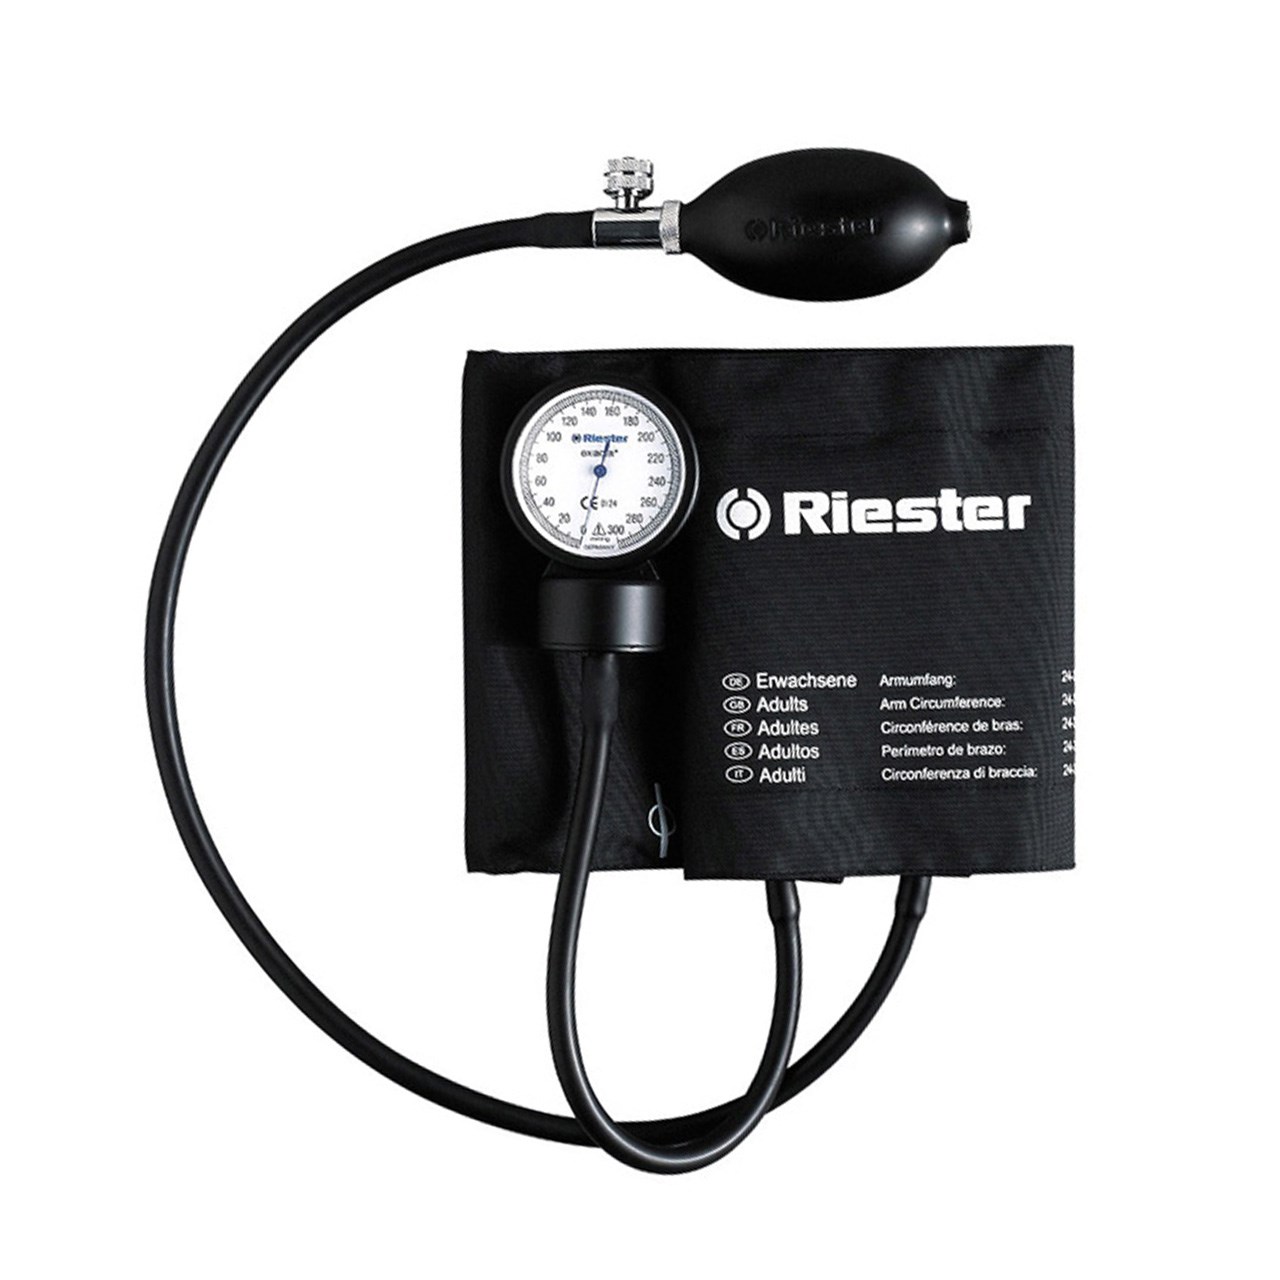 فروش اقساطی فشارسنج عقربه ای ریشتر مدل Exacta 1350